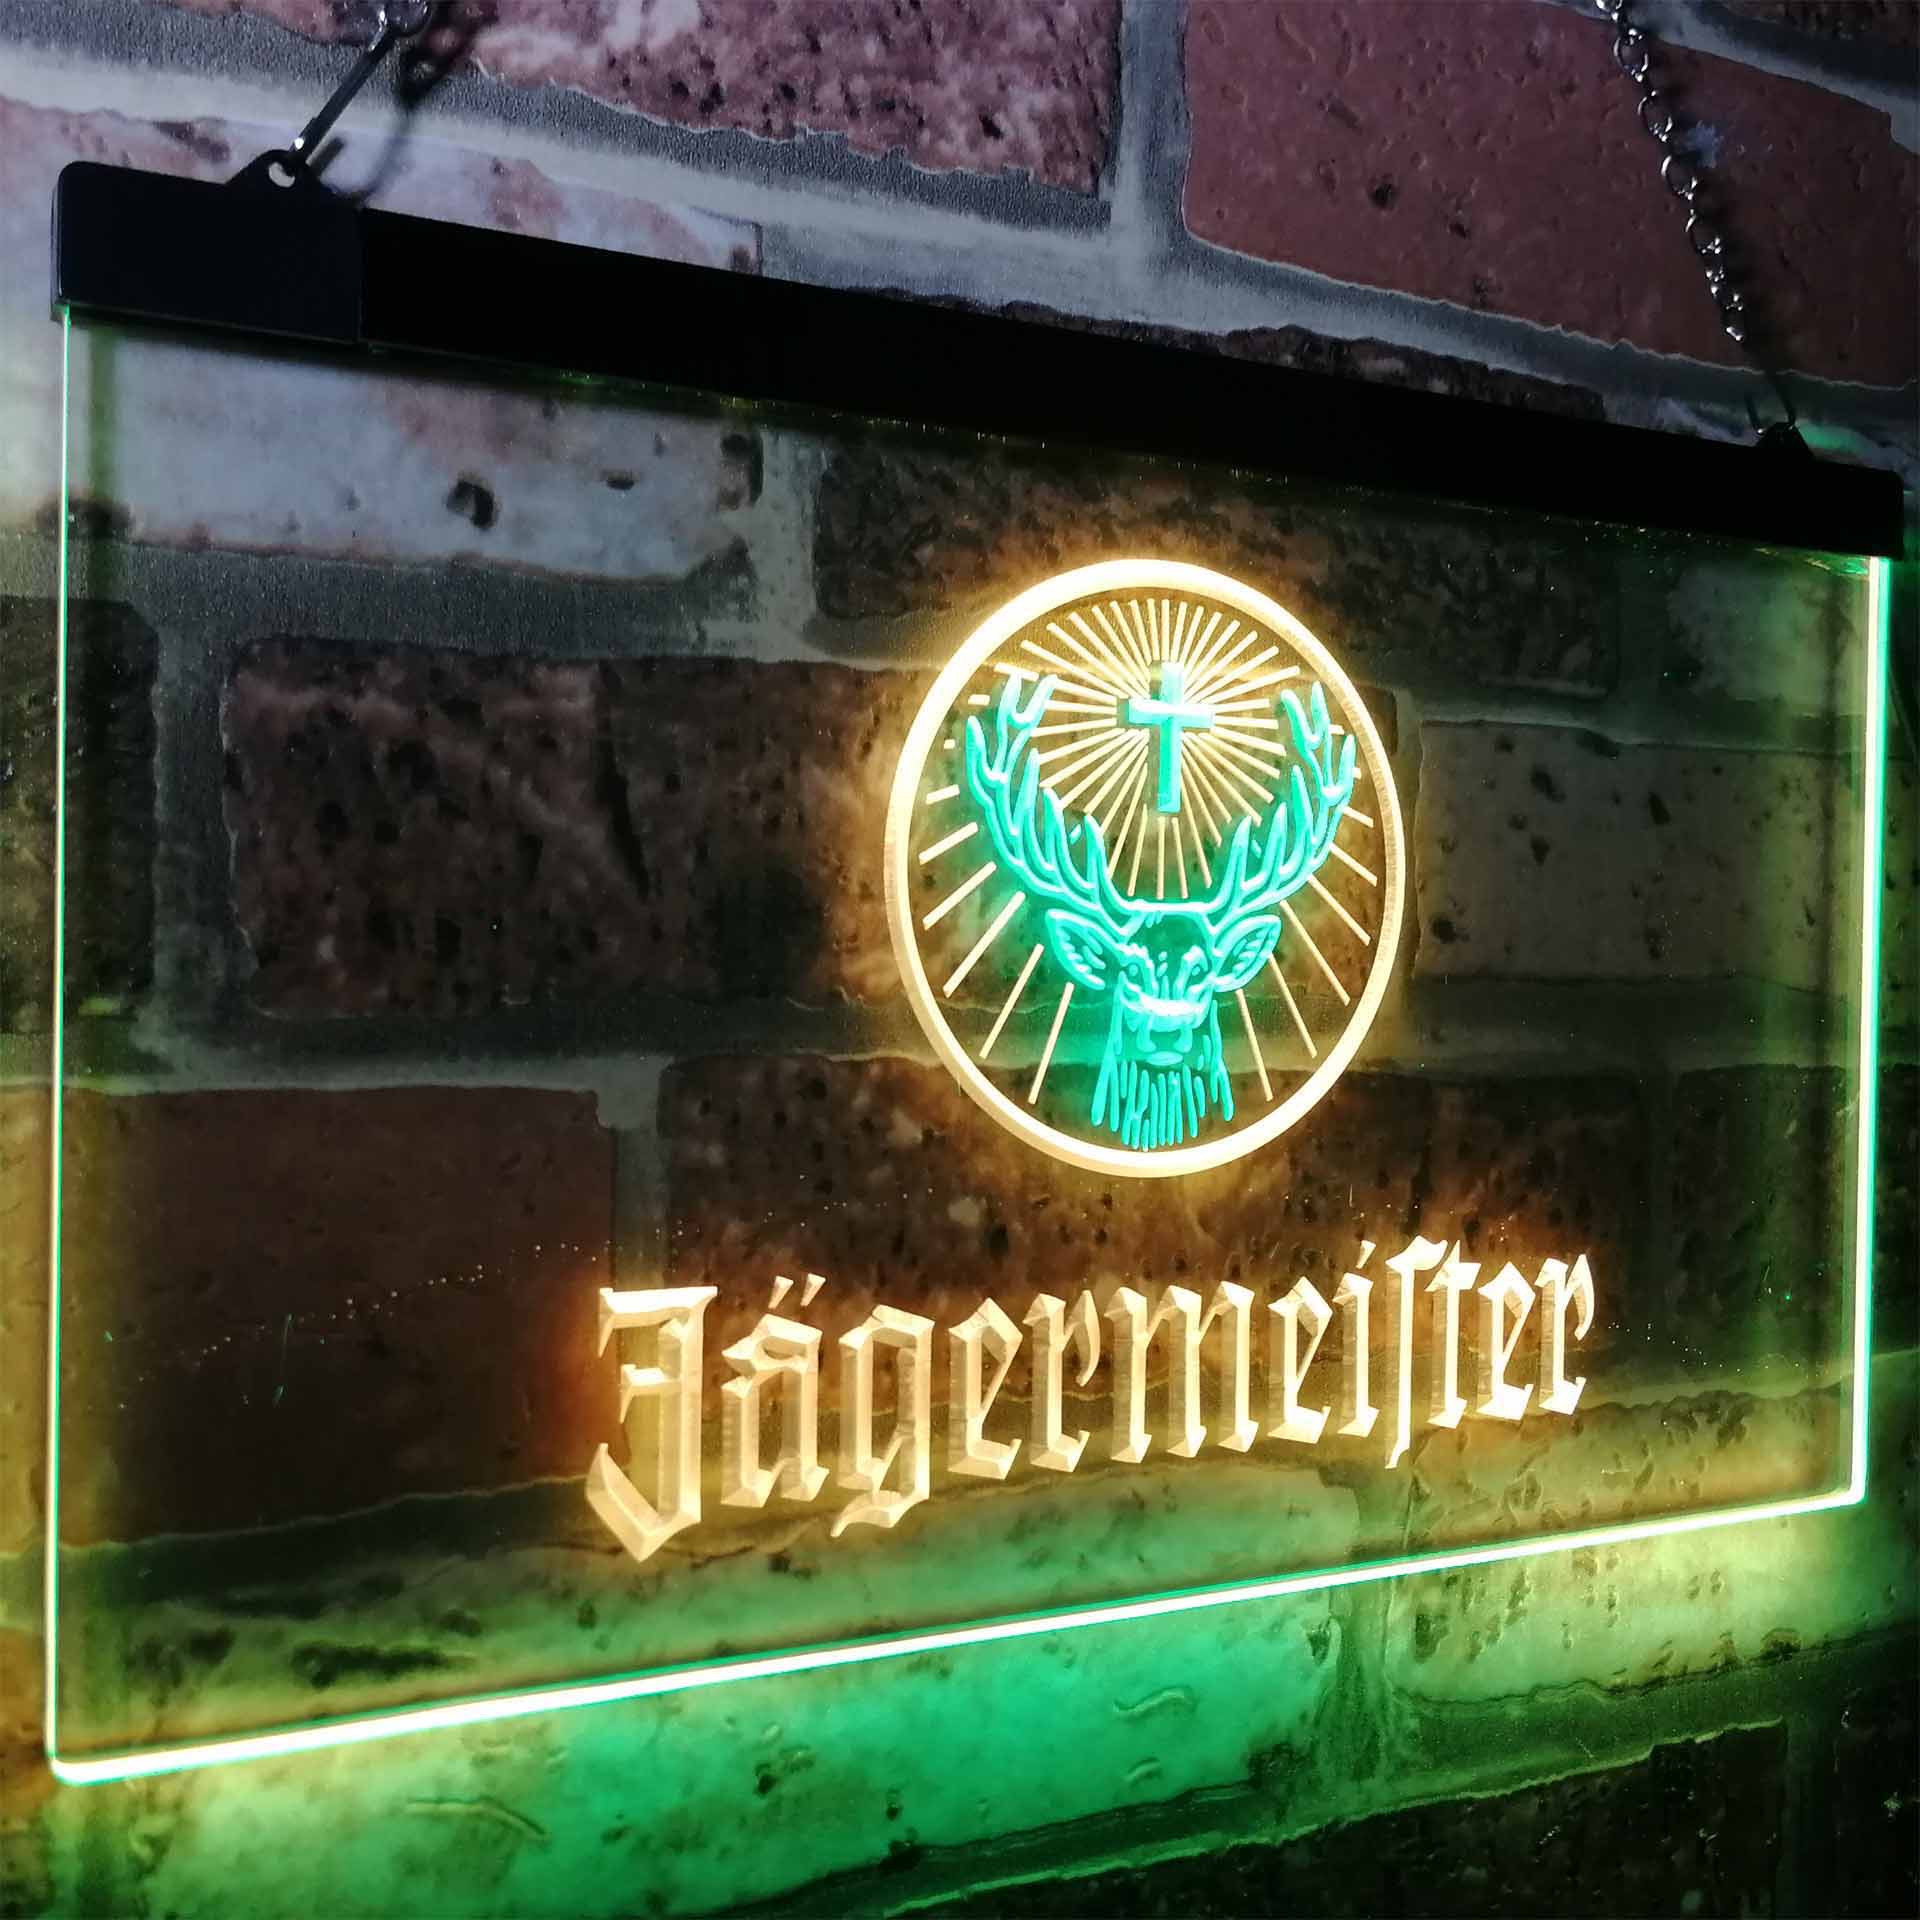 Jagermeister Deer Drink Bar Neon LED Sign